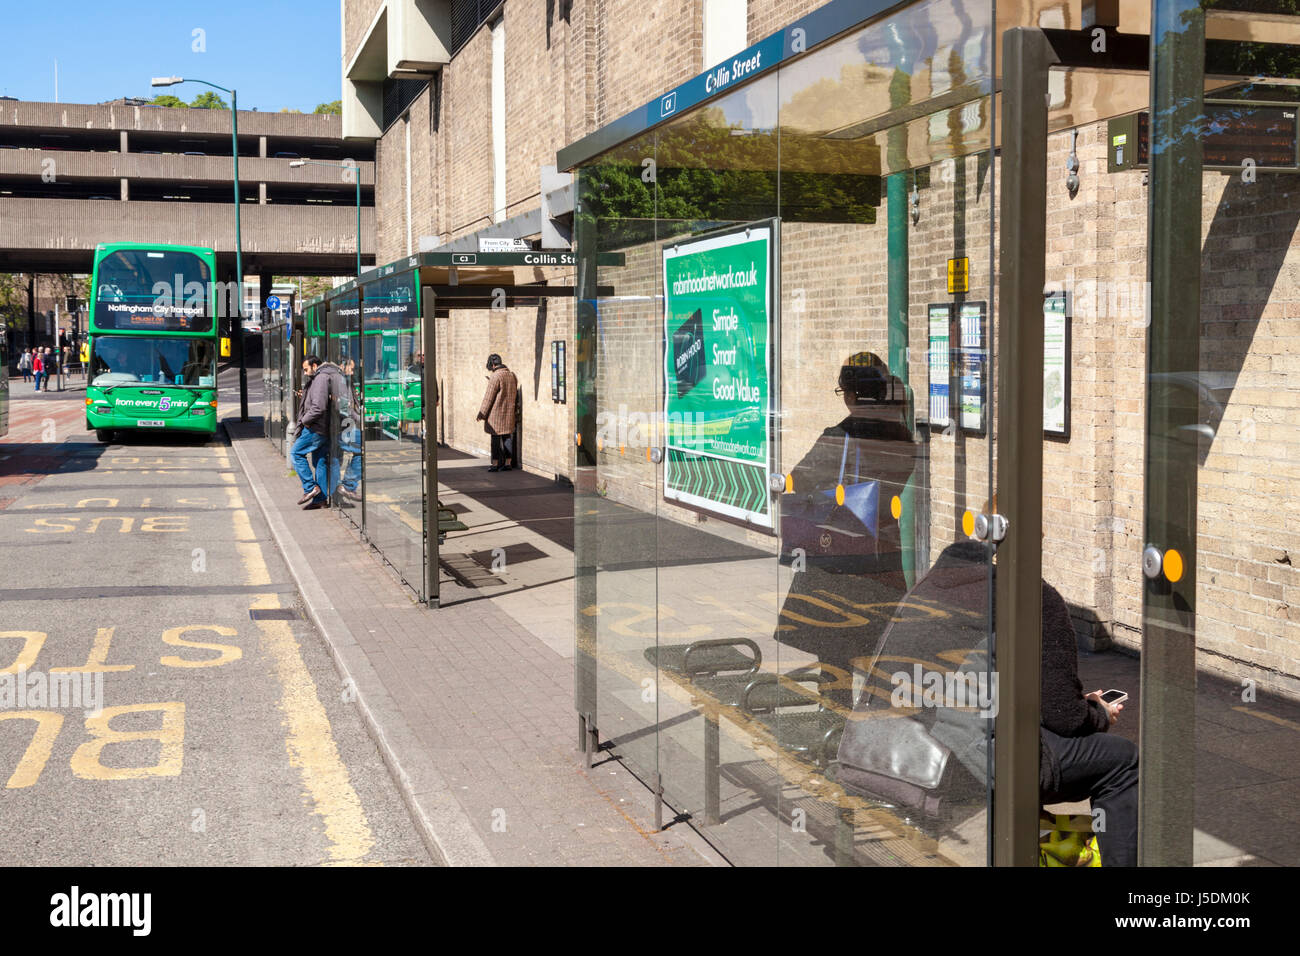 Les gens qui attendent à un arrêt de bus. Une section d'une rue avec plusieurs arrêts de bus desservant de nombreux services de bus, Nottingham, England, UK Banque D'Images